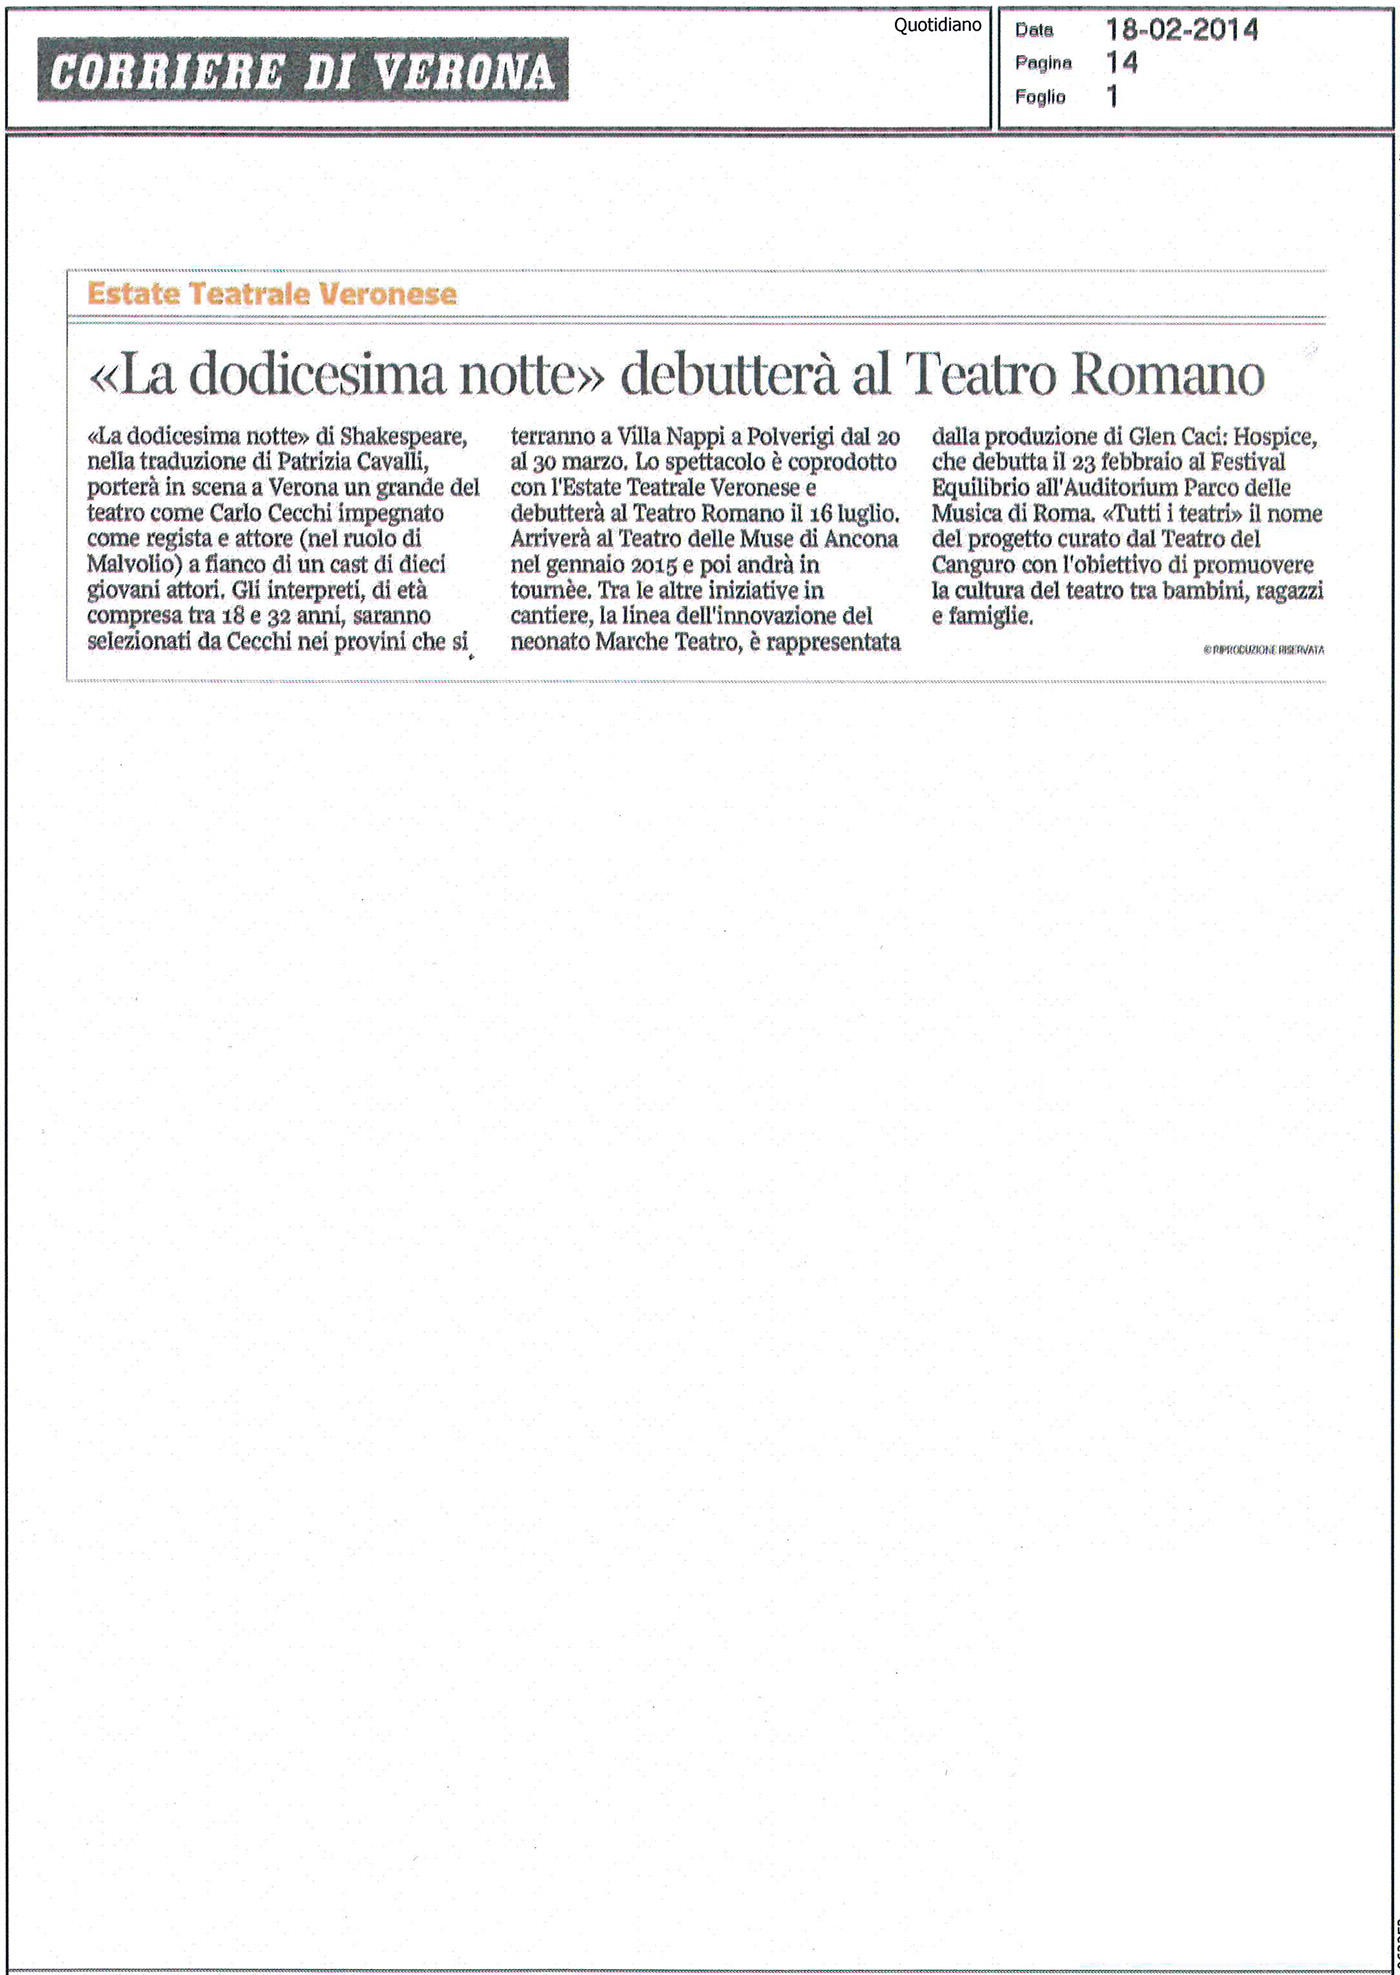 2014.02.18 'La dodicesima notte' debutterà al Teatro Romano - Corriere di Verona